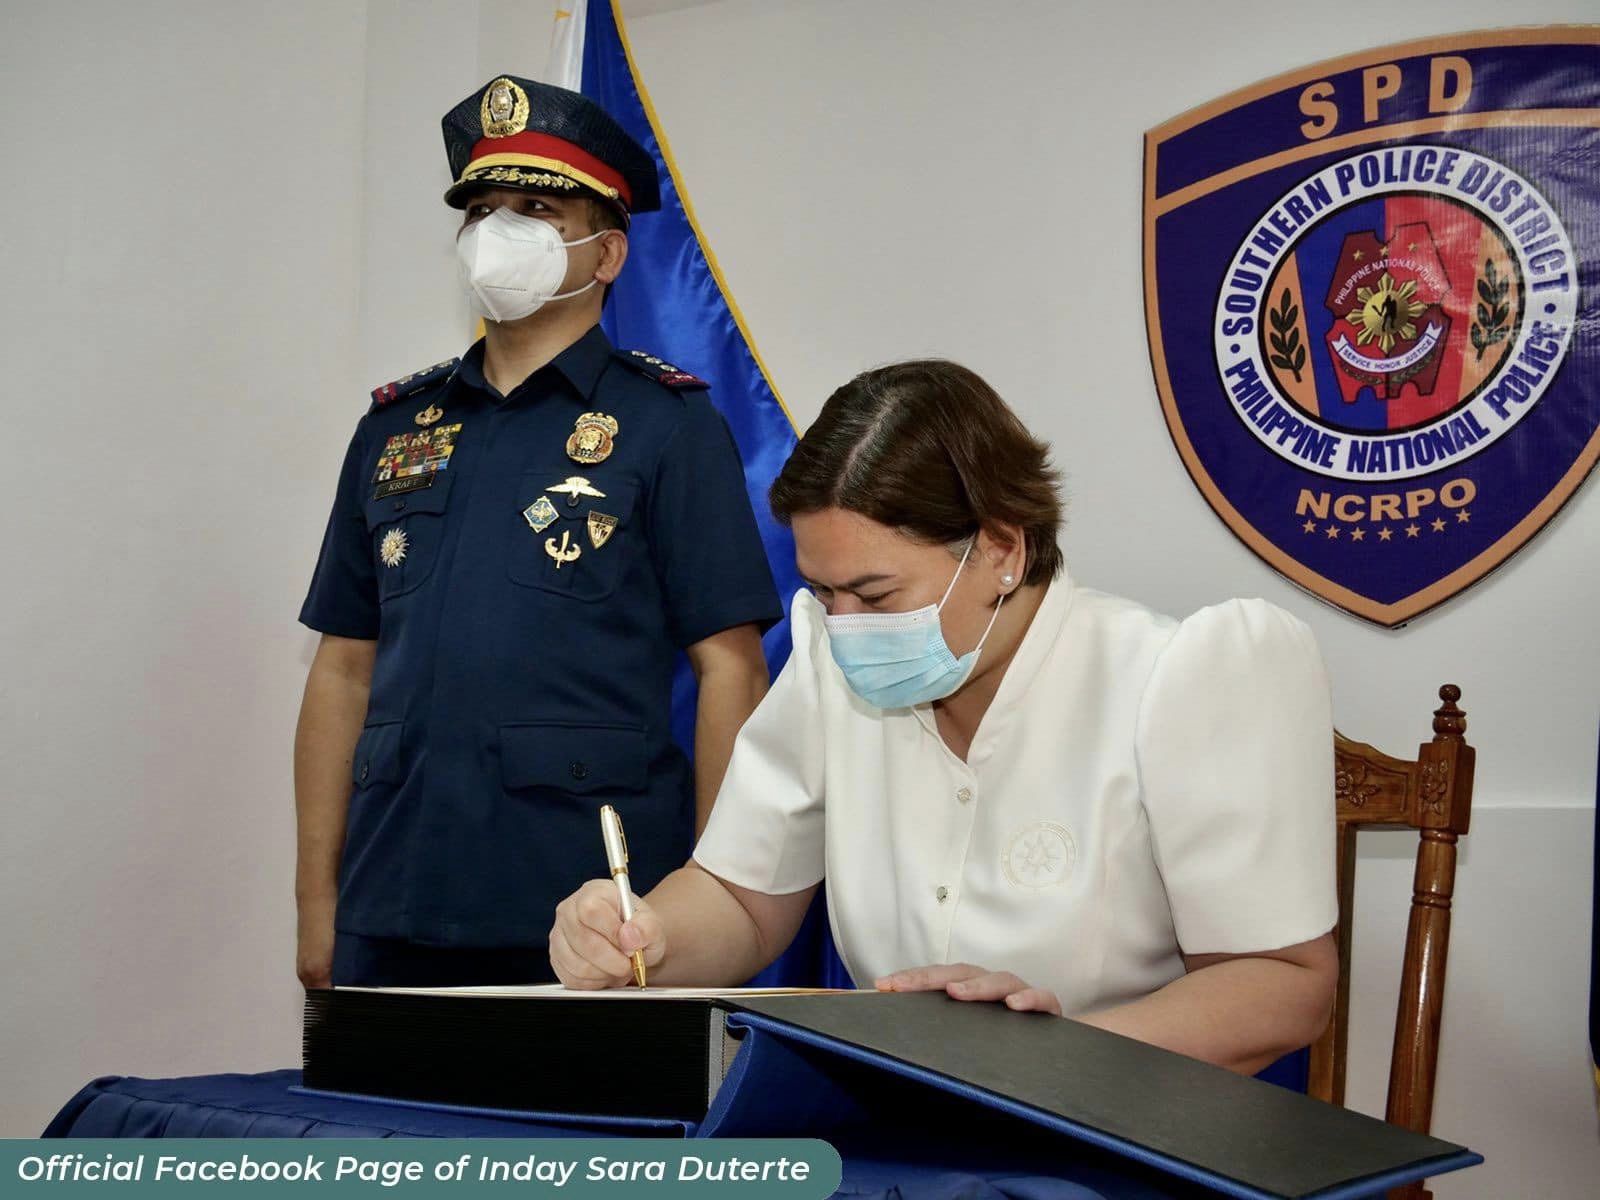 VP Sara Duterte writing